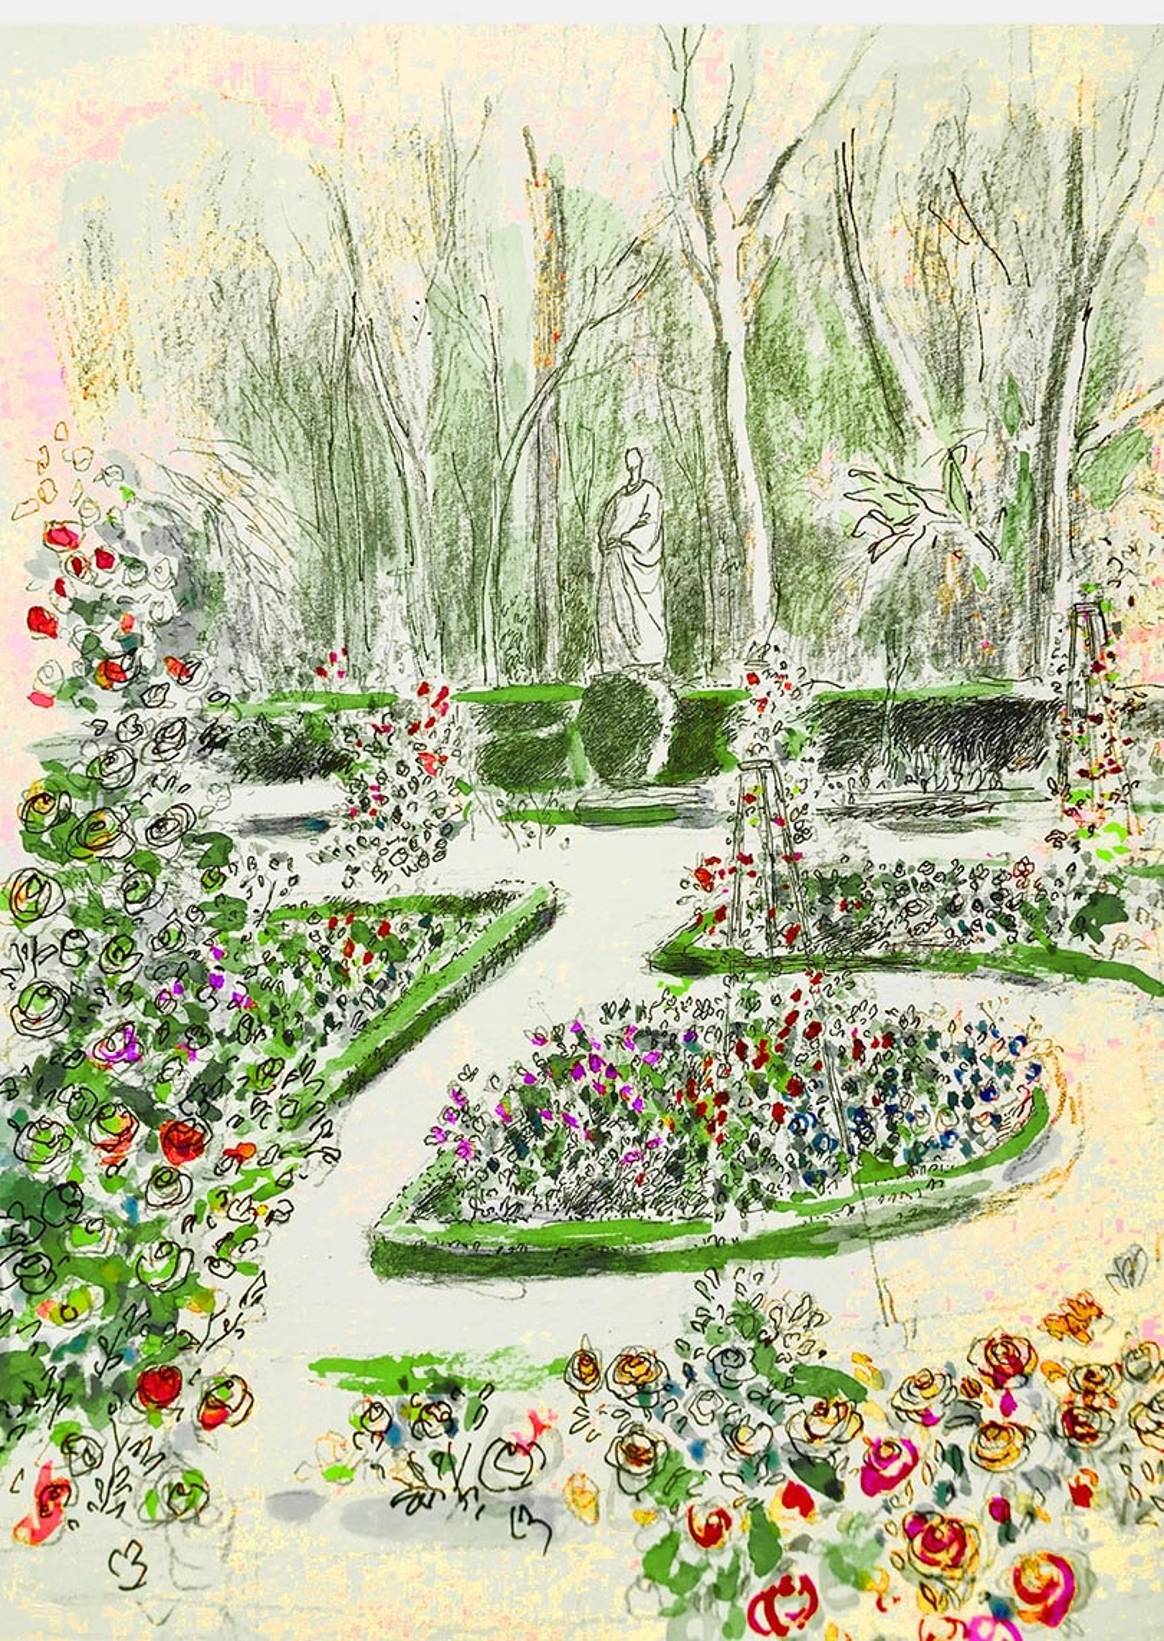 Chanel restaurará la rosaleda del Real Jardín Botánico de Madrid